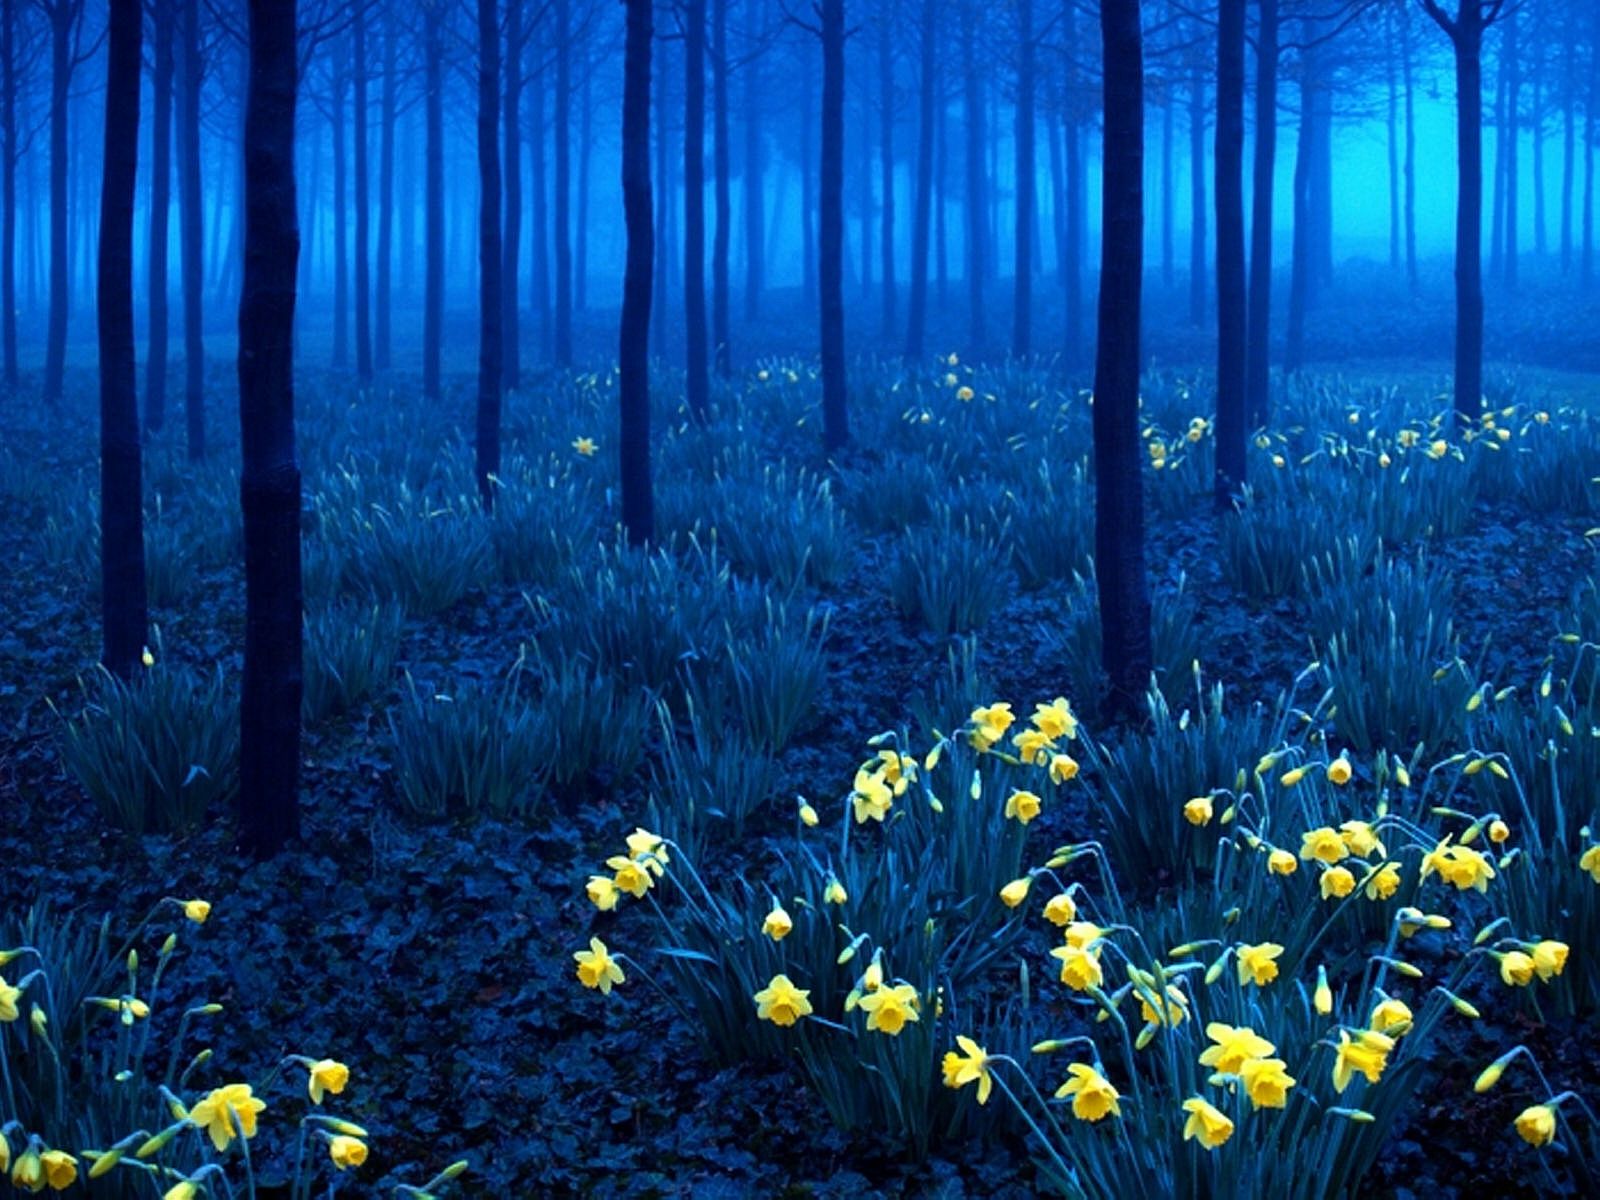  Mystisch Hintergrundbild 1600x1200. Mystische Wald voller Blumen. Schöne Landschaft Wallpaper für ios. Wald, Bäume, Blumen, Nacht